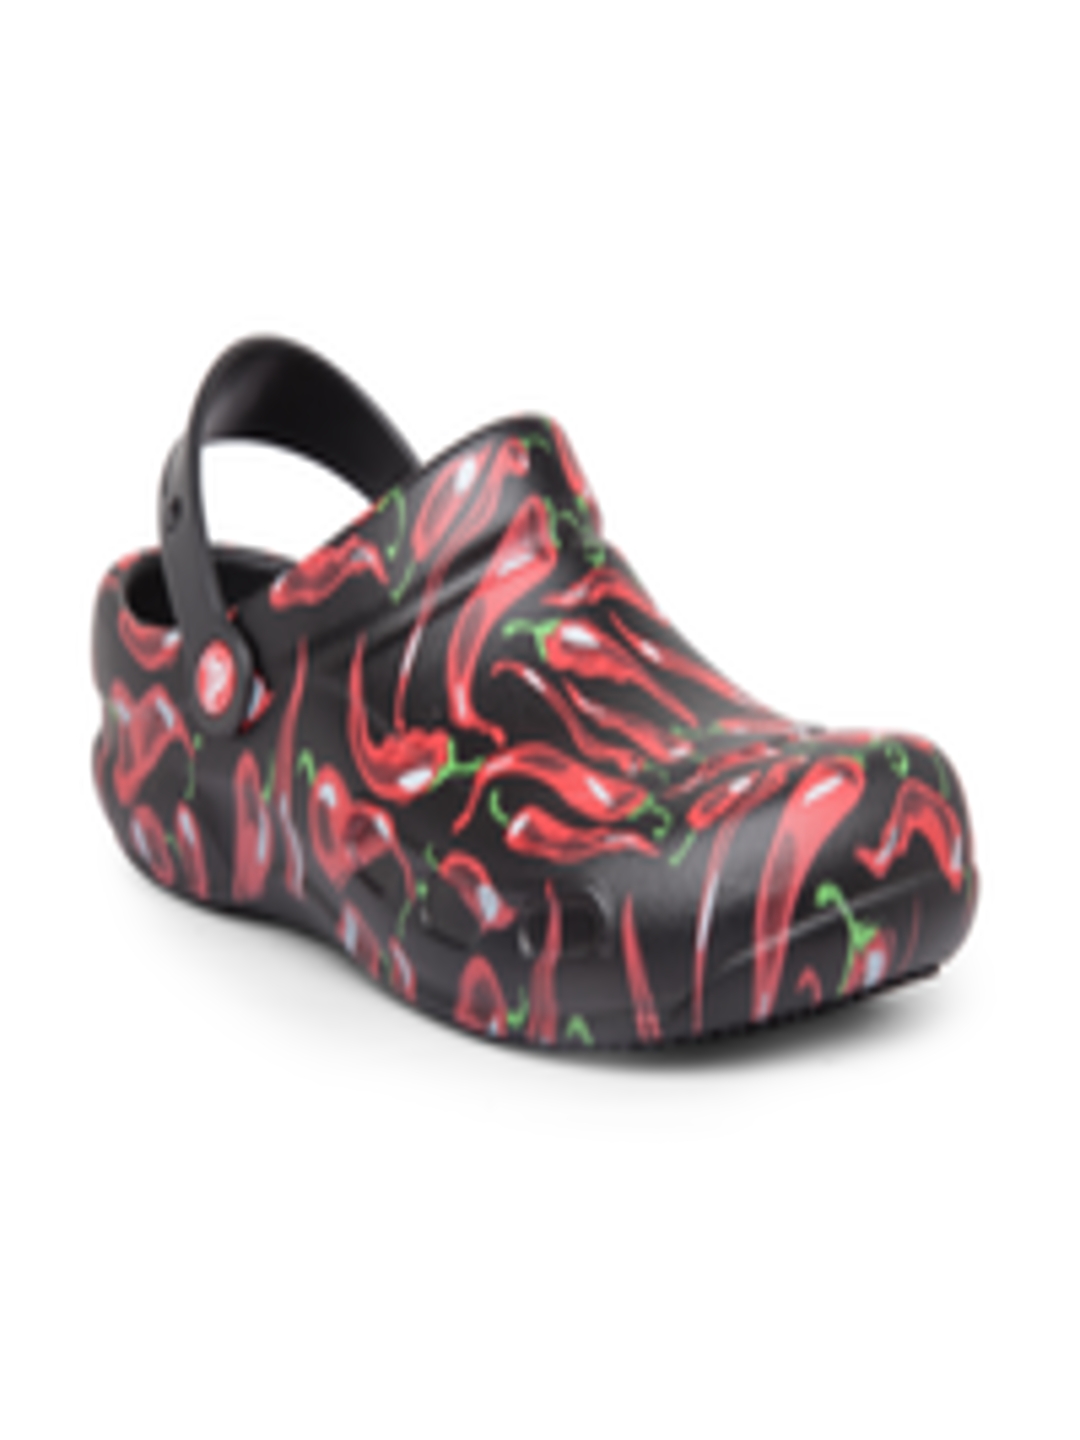 Buy Crocs Bistro Men Black Red Clogs - Sandals for Men 2306618 | Myntra